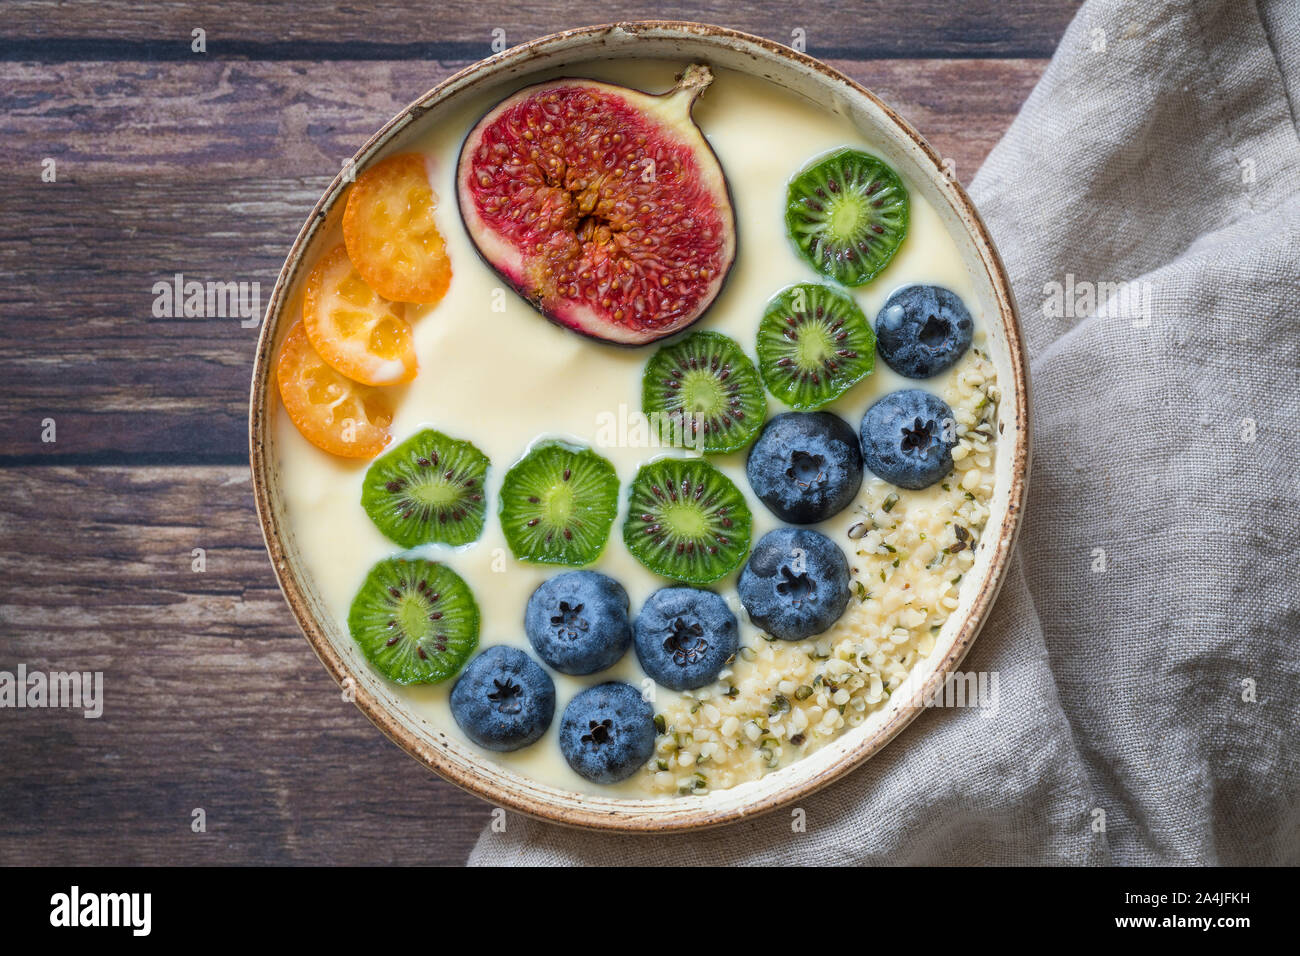 Eine frische, gesunde organische Joghurt smoothie Schale von oben gesehen mit einer Variation von frischen Früchten - Heidelbeeren, Kiwis, Feigen, Passionsfrucht und kumqu Stockfoto